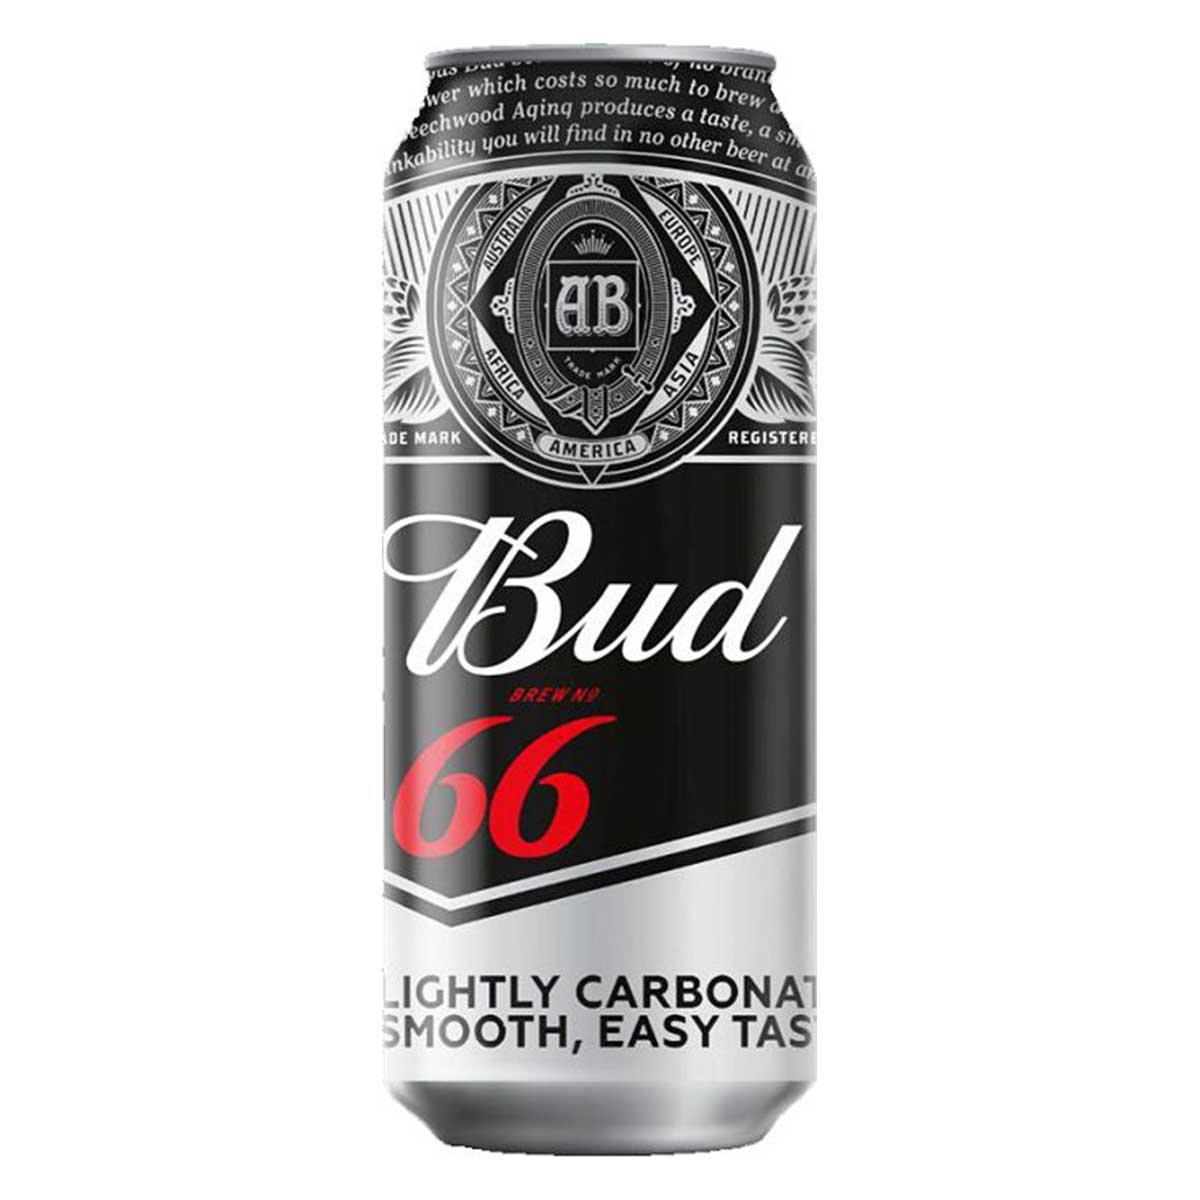 Бад кб. Пиво БАД 66 светлое 4,3% 0,45л ж/б. Пиво БАД 66 жб. Пиво БАД светлое ж/б 0.45. Пиво светлое Bud 0.45 л.